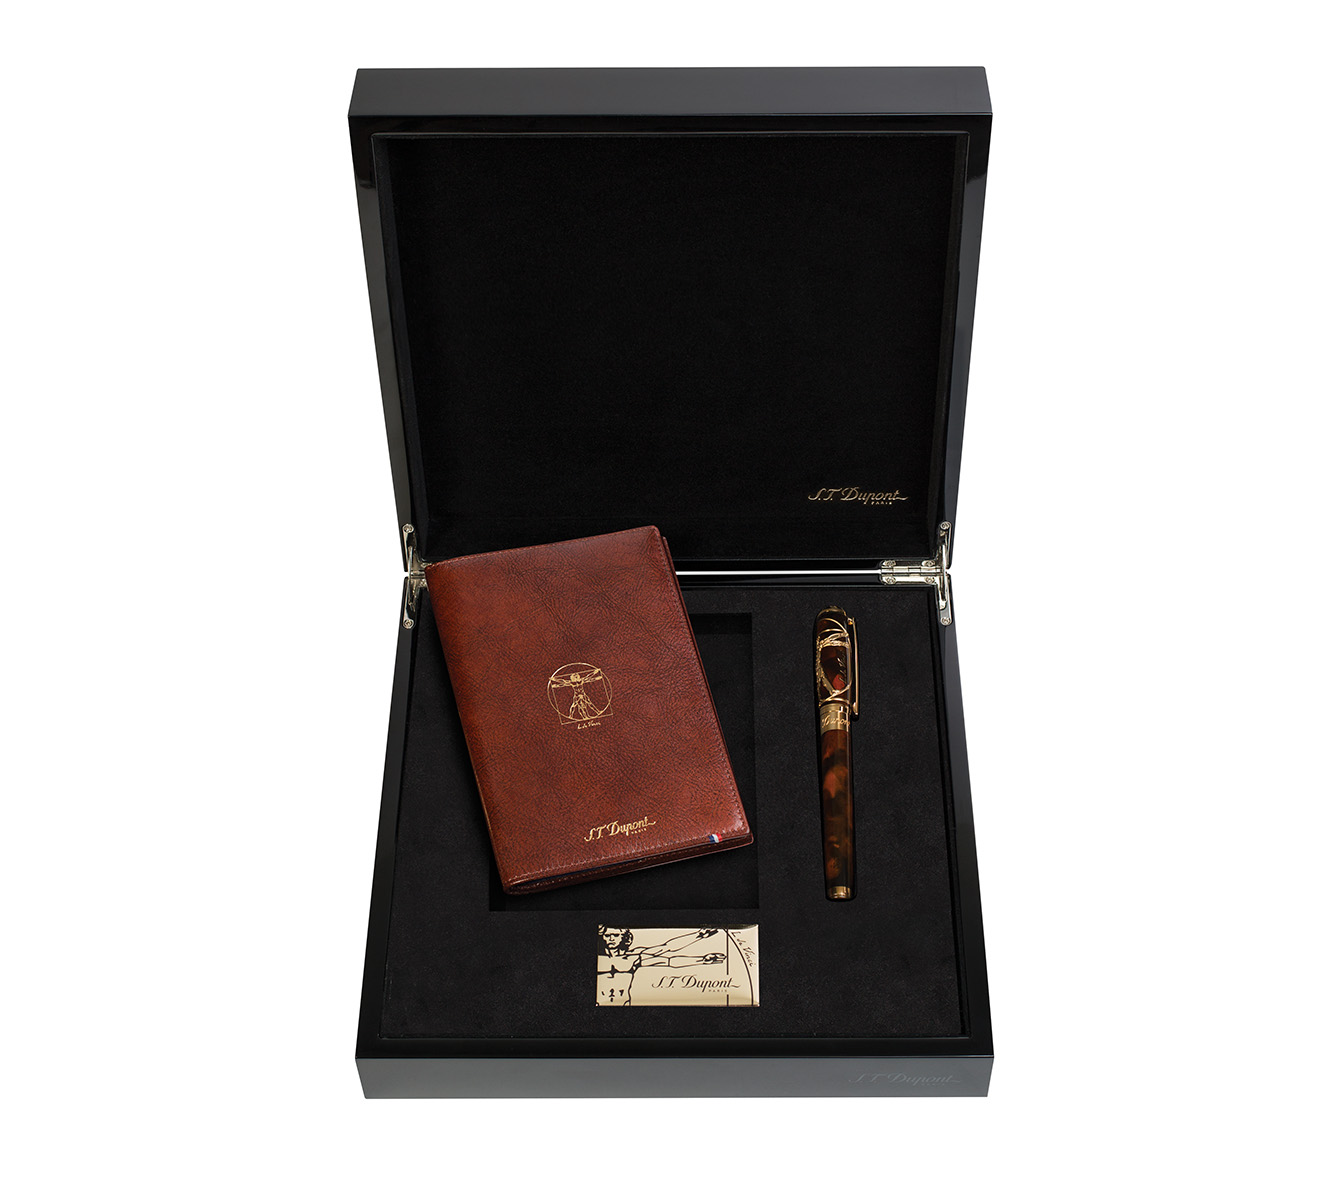 Подарочный набор Vitruvian Man: перьевая ручка, блокнот S.T. Dupont Limited Edition C41007N - фото 1 – Mercury